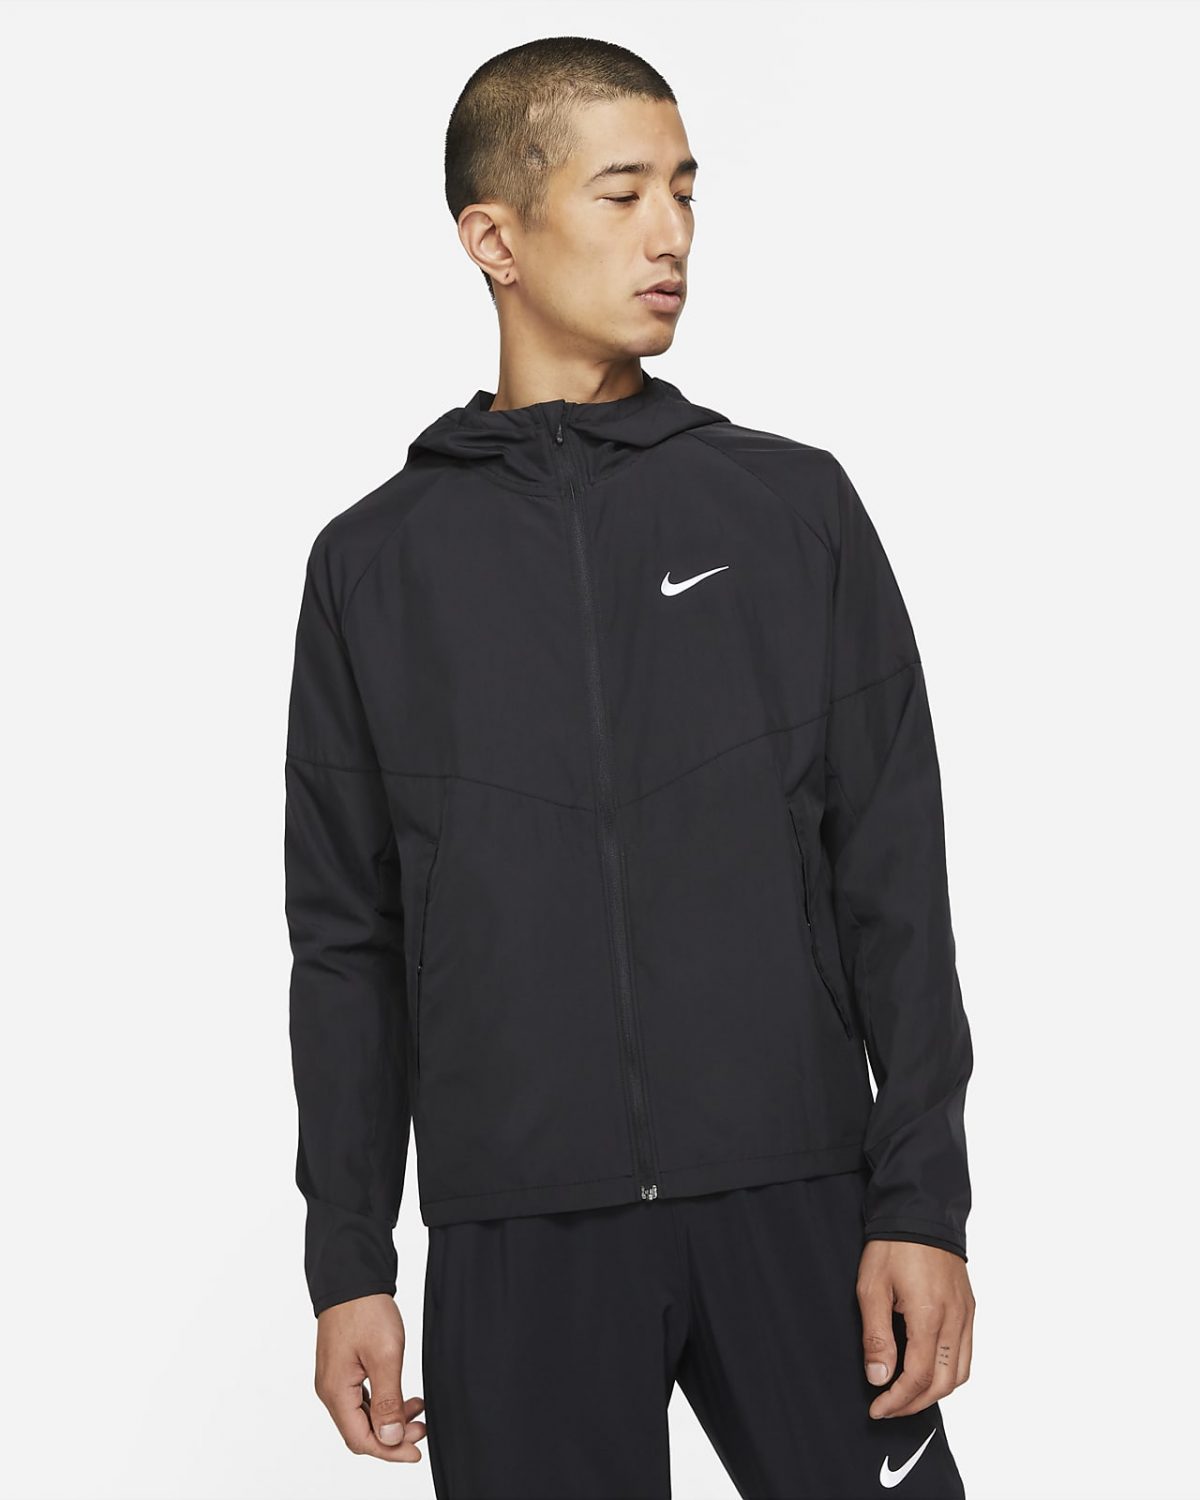 Мужская куртка Nike Miler фото